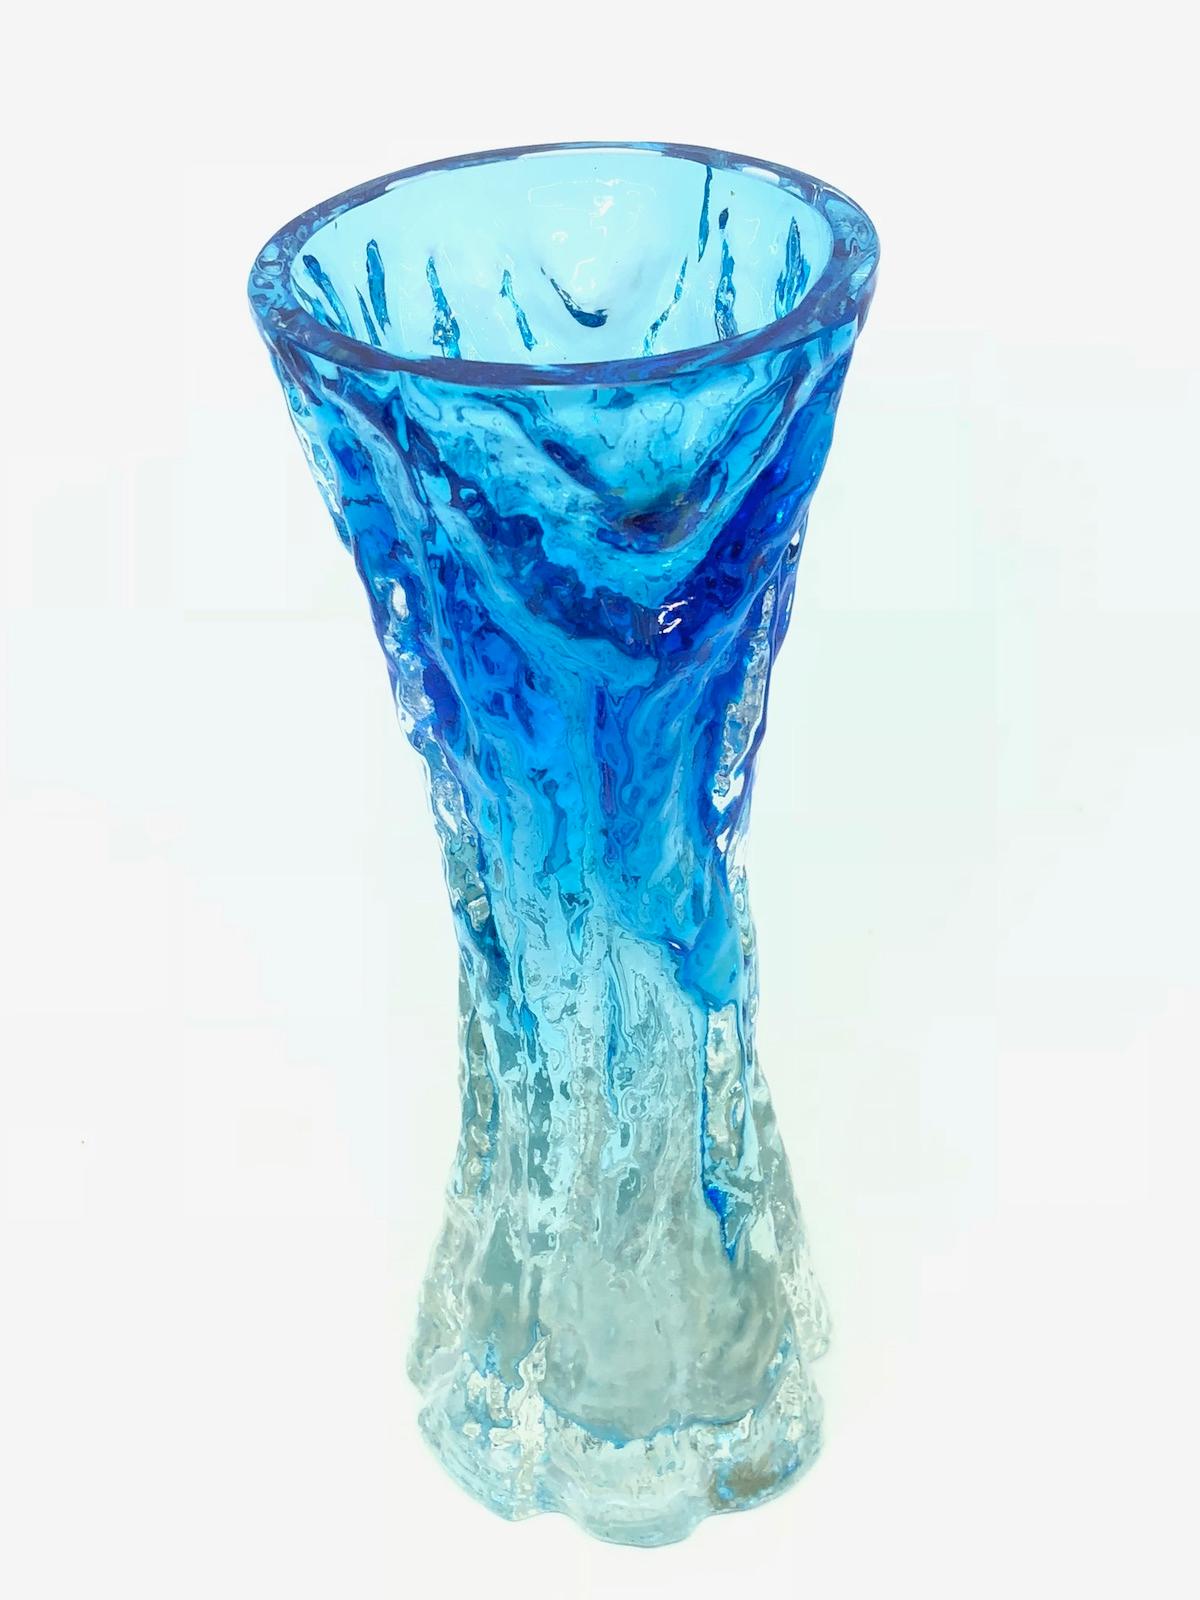 Wunderschöne deutsche Vase der Jahrhundertmitte von Ingrid Glas, um 1970. Diese wunderschöne hellblaue und klare Vase bringt einen Hauch von Spaß und Fantasie in jeden Raum mit ihrer skurrilen, strukturierten 